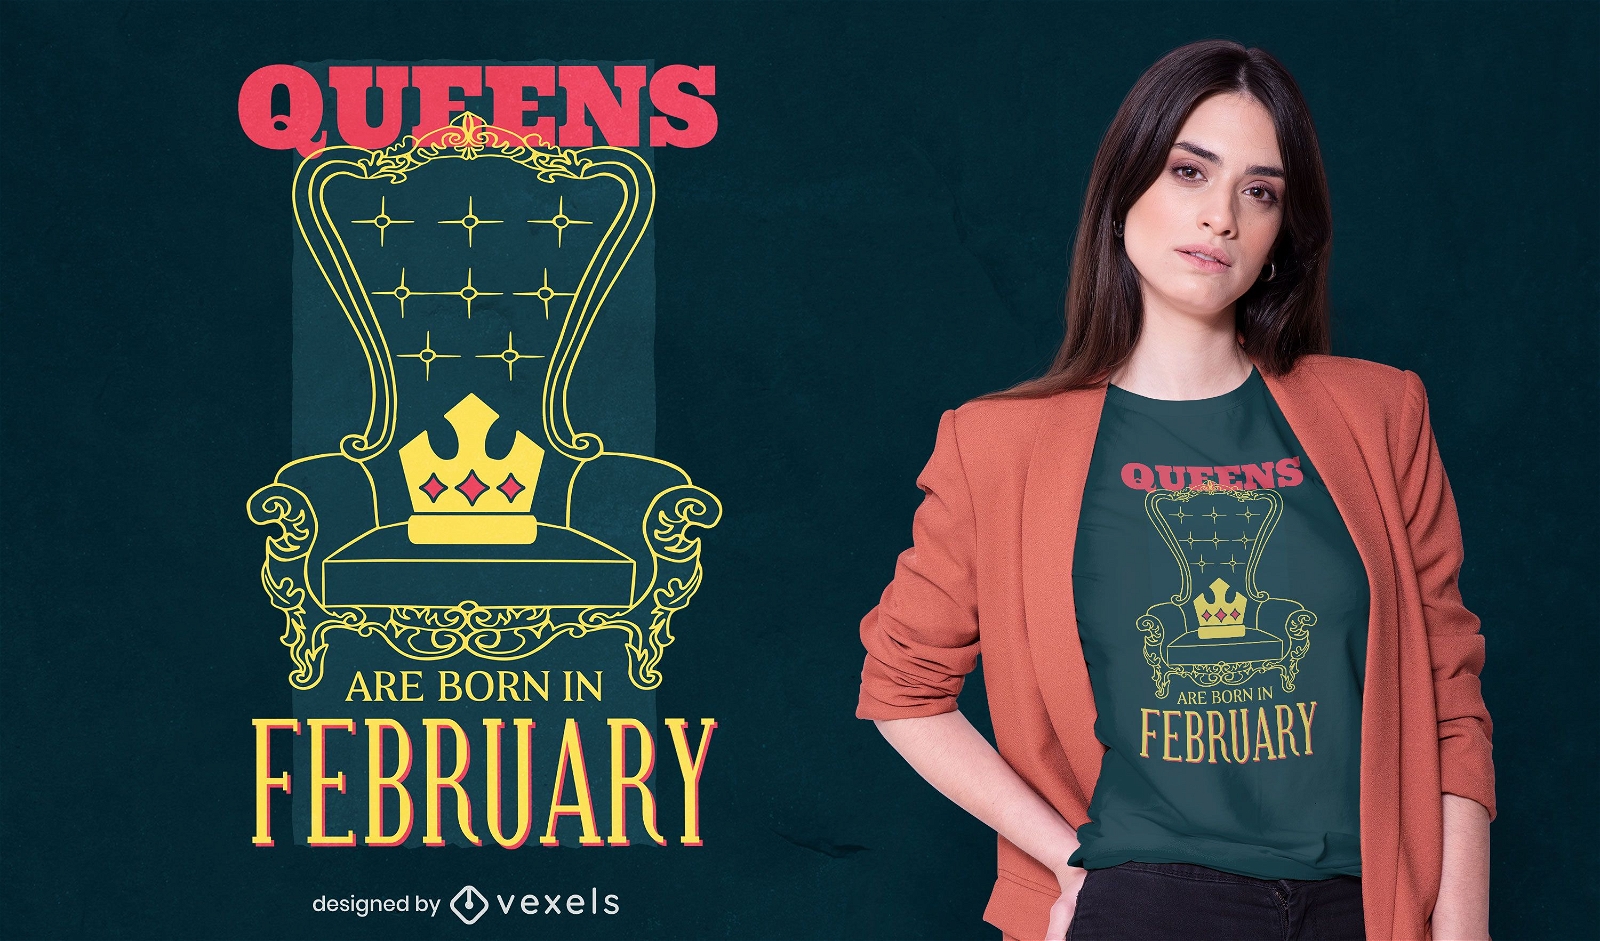 Queens nacen en dise?o de camiseta de febrero